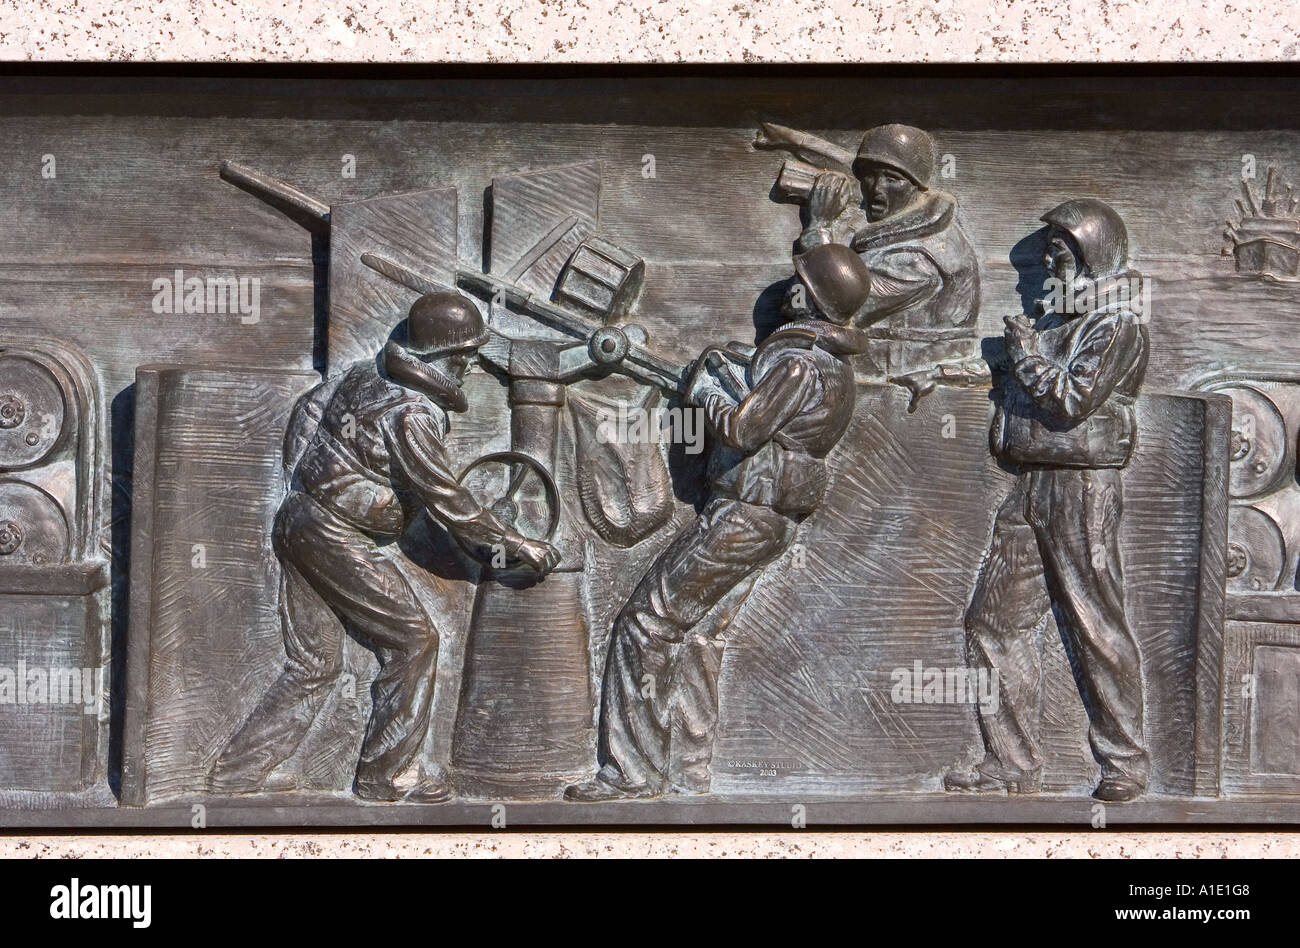 Cuirassé de Bronze au secours Monument commémoratif de la Seconde Guerre Mondiale Washington DC, United States of America Banque D'Images